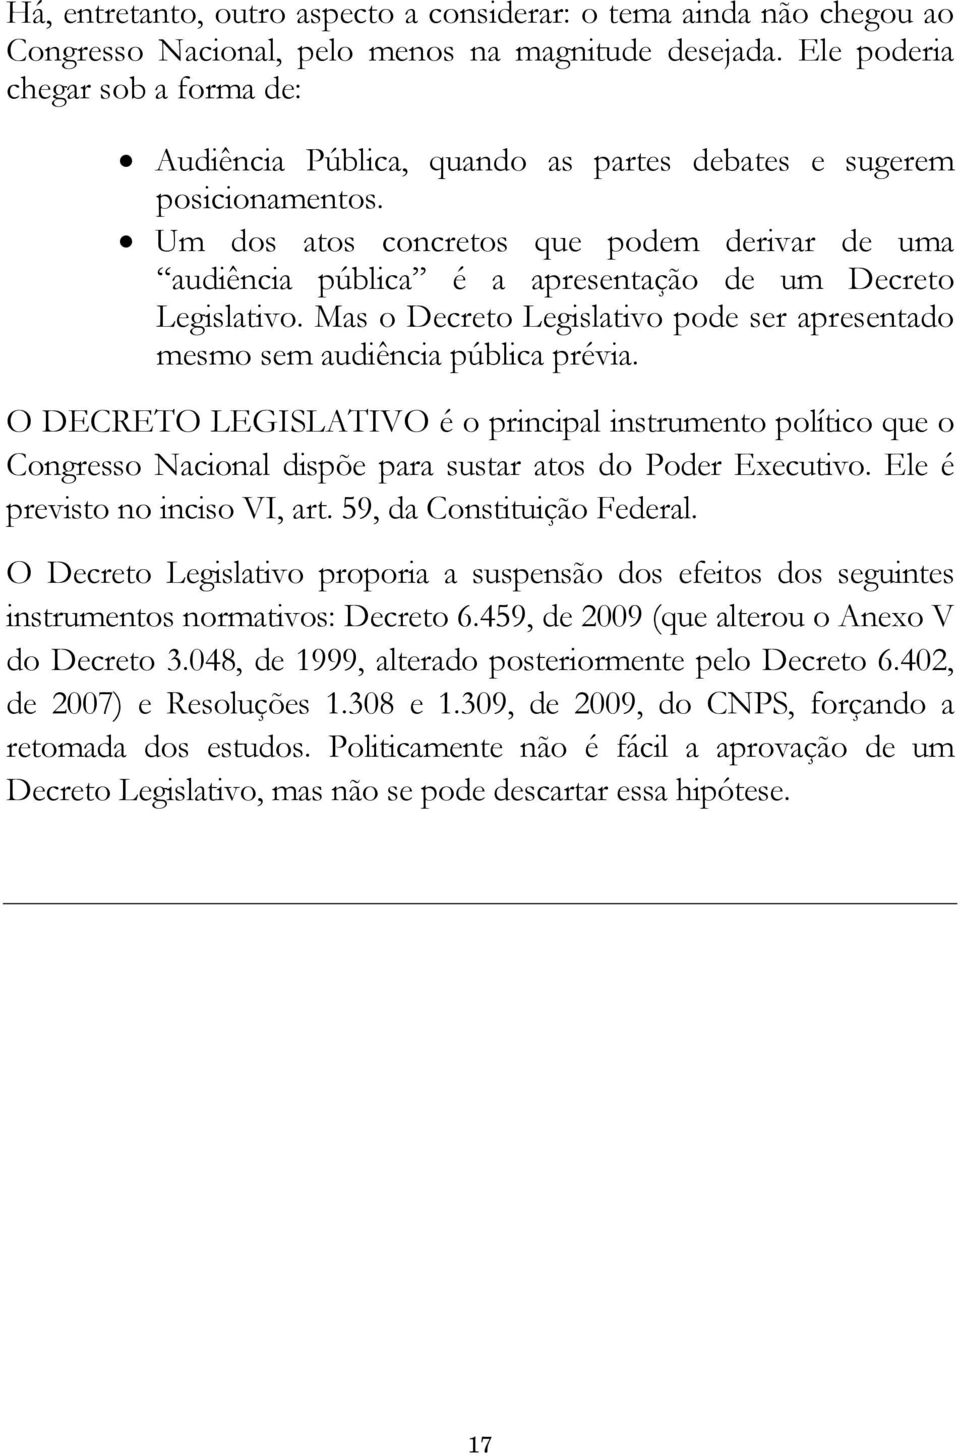 " Um dos atos concretos que podem derivar de uma audiência pública é a apresentação de um Decreto Legislativo. Mas o Decreto Legislativo pode ser apresentado mesmo sem audiência pública prévia.